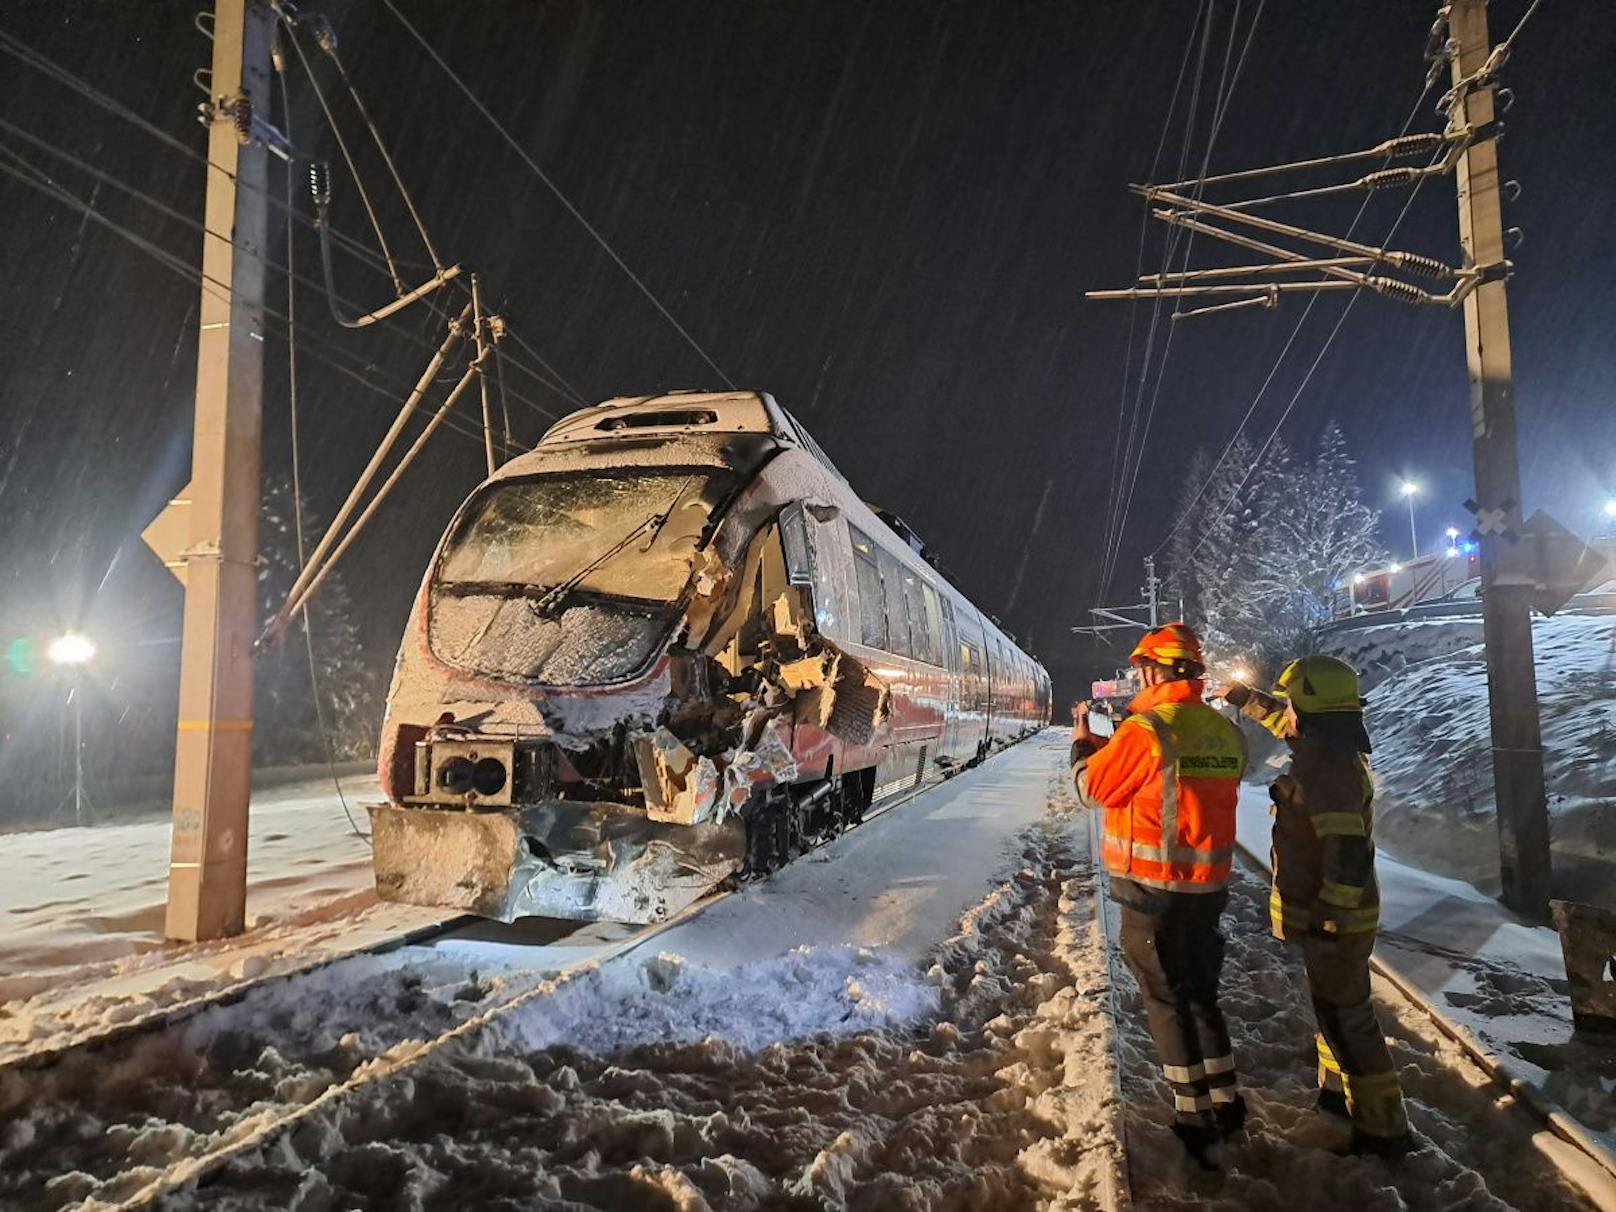 Zu einem schweren Unfall auf einem beschranktem Bahnübergang kam es am 23. Jänner 2023 gegen 18 Uhr in Bruck an der Glocknerstraße.